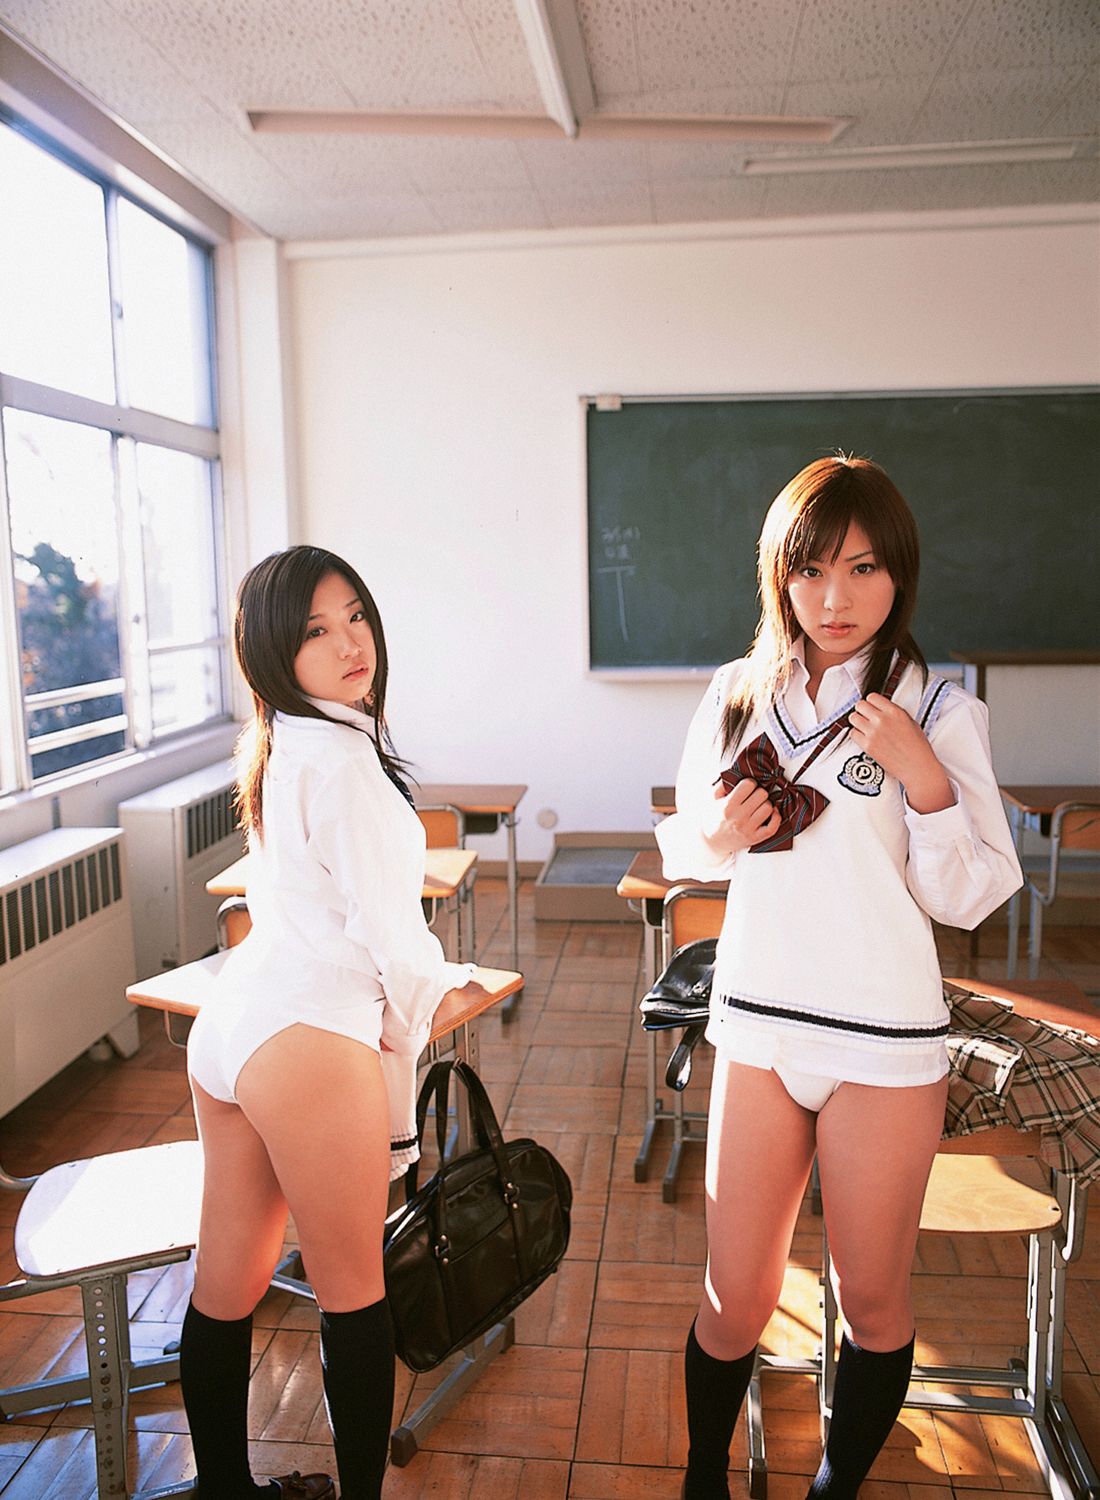 фото школьницы для себя азиатки фото 89